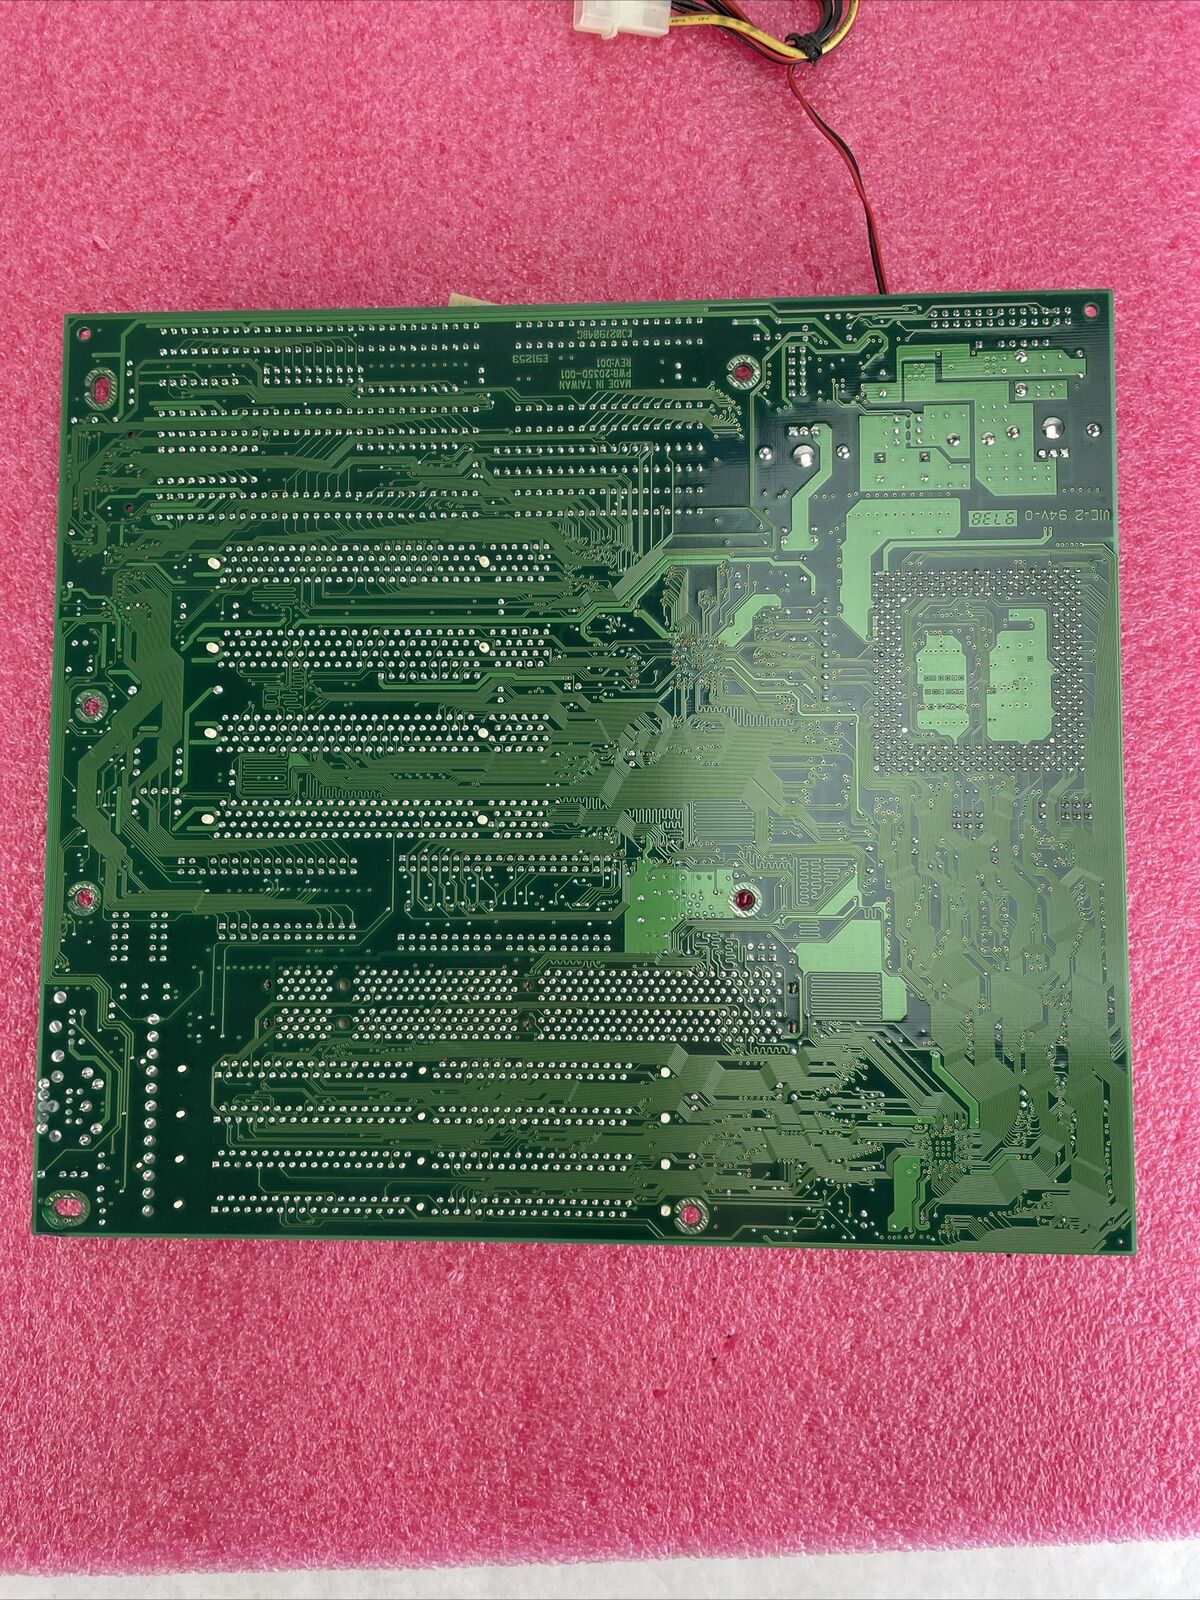 Mitsuba BCM SQ575 Motherboard Intel Pentium MMX 166MHz 32MB RAM